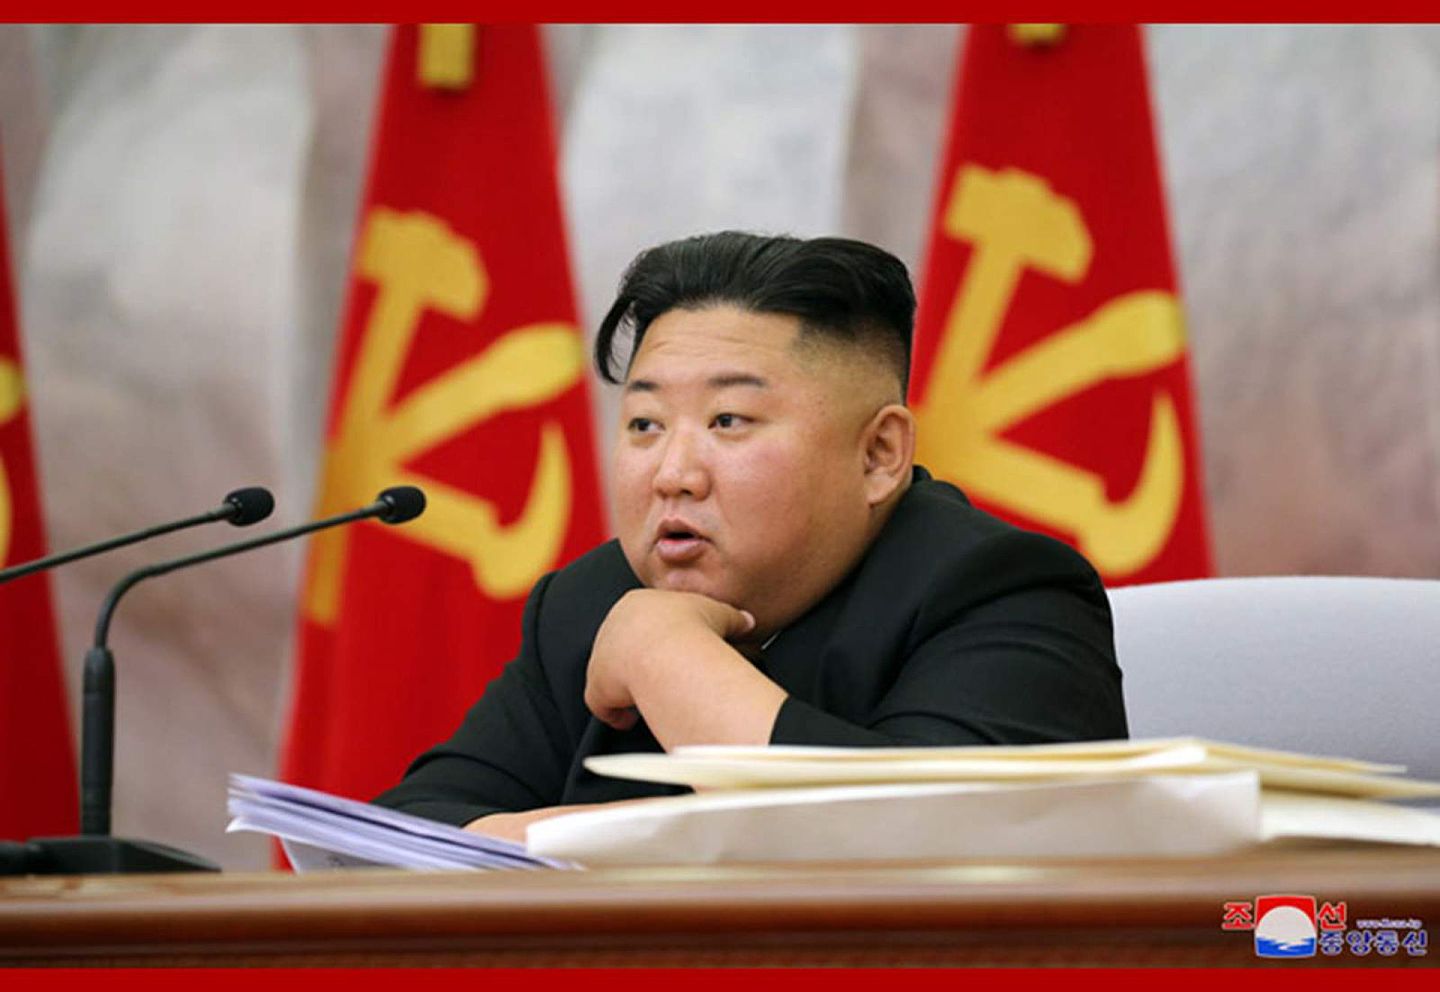 朝鲜最高领导人金正恩于5月24日主持召开朝鲜劳动党第七届中央军事委员会第四次扩大会议后再次隐匿行踪。（朝中社）